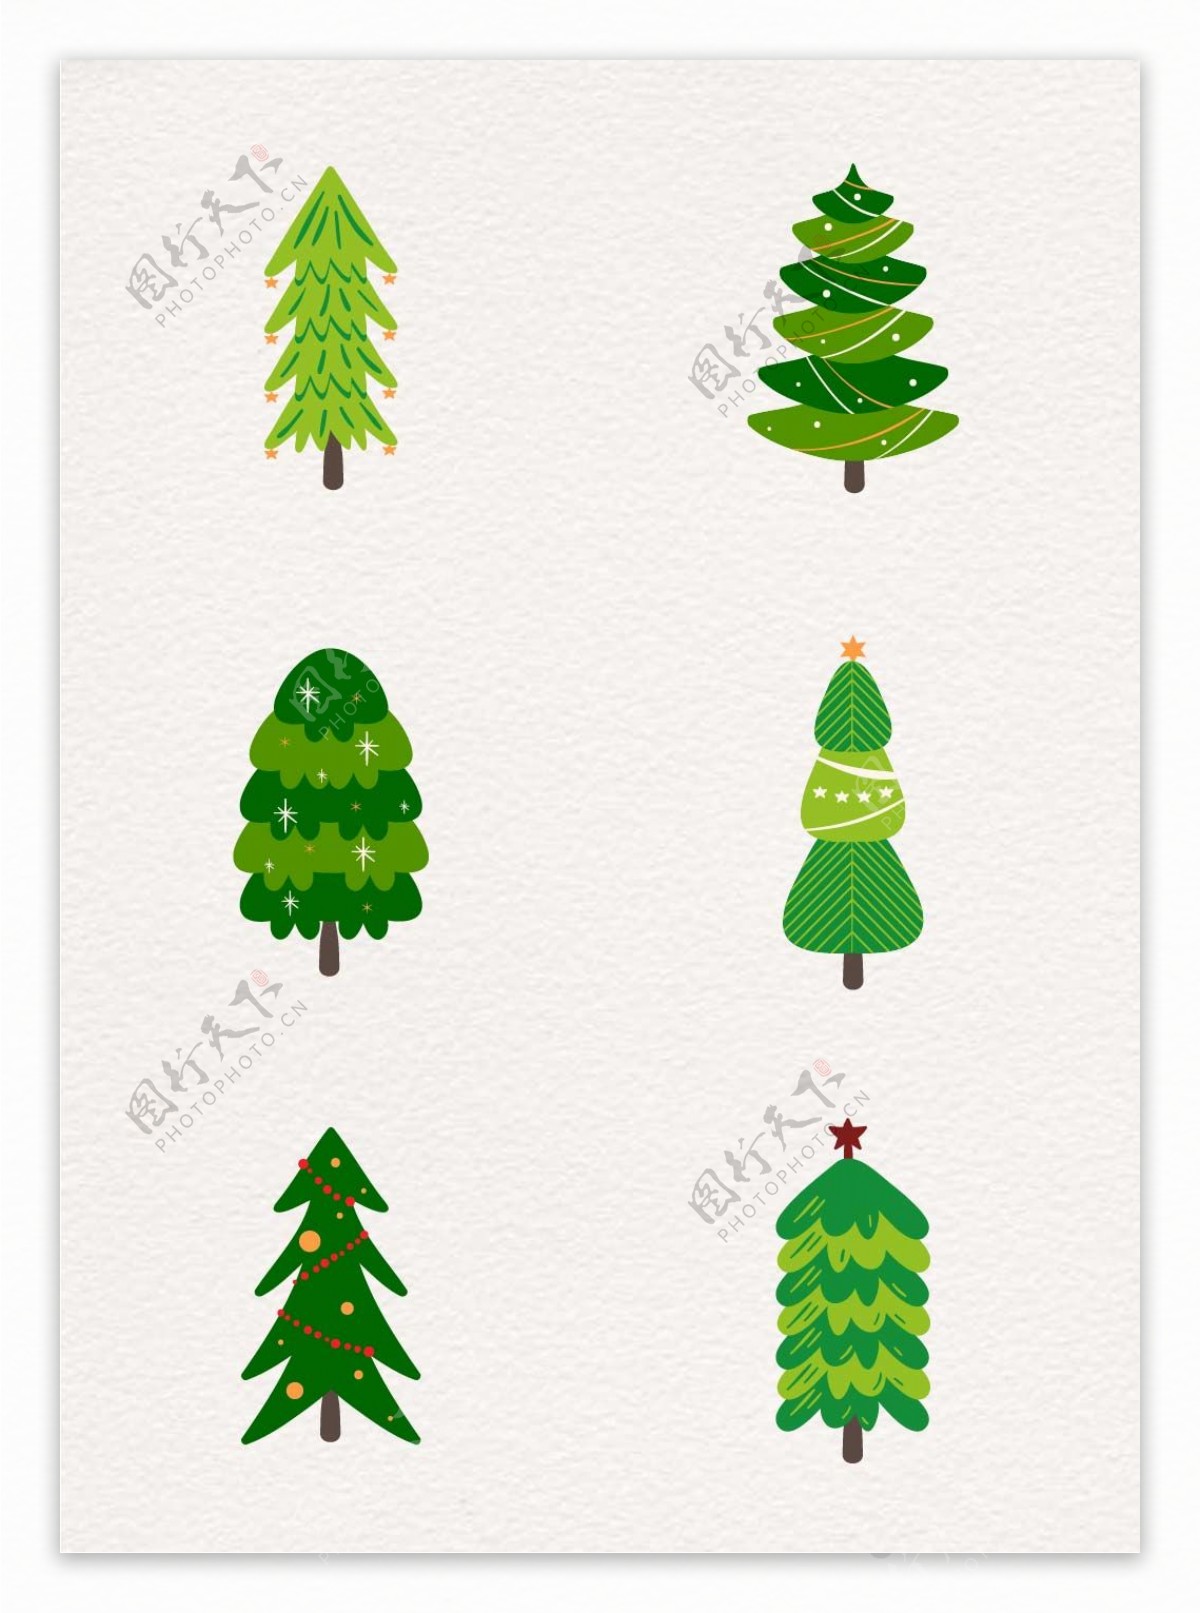 创意绿色圣诞树矢量素材